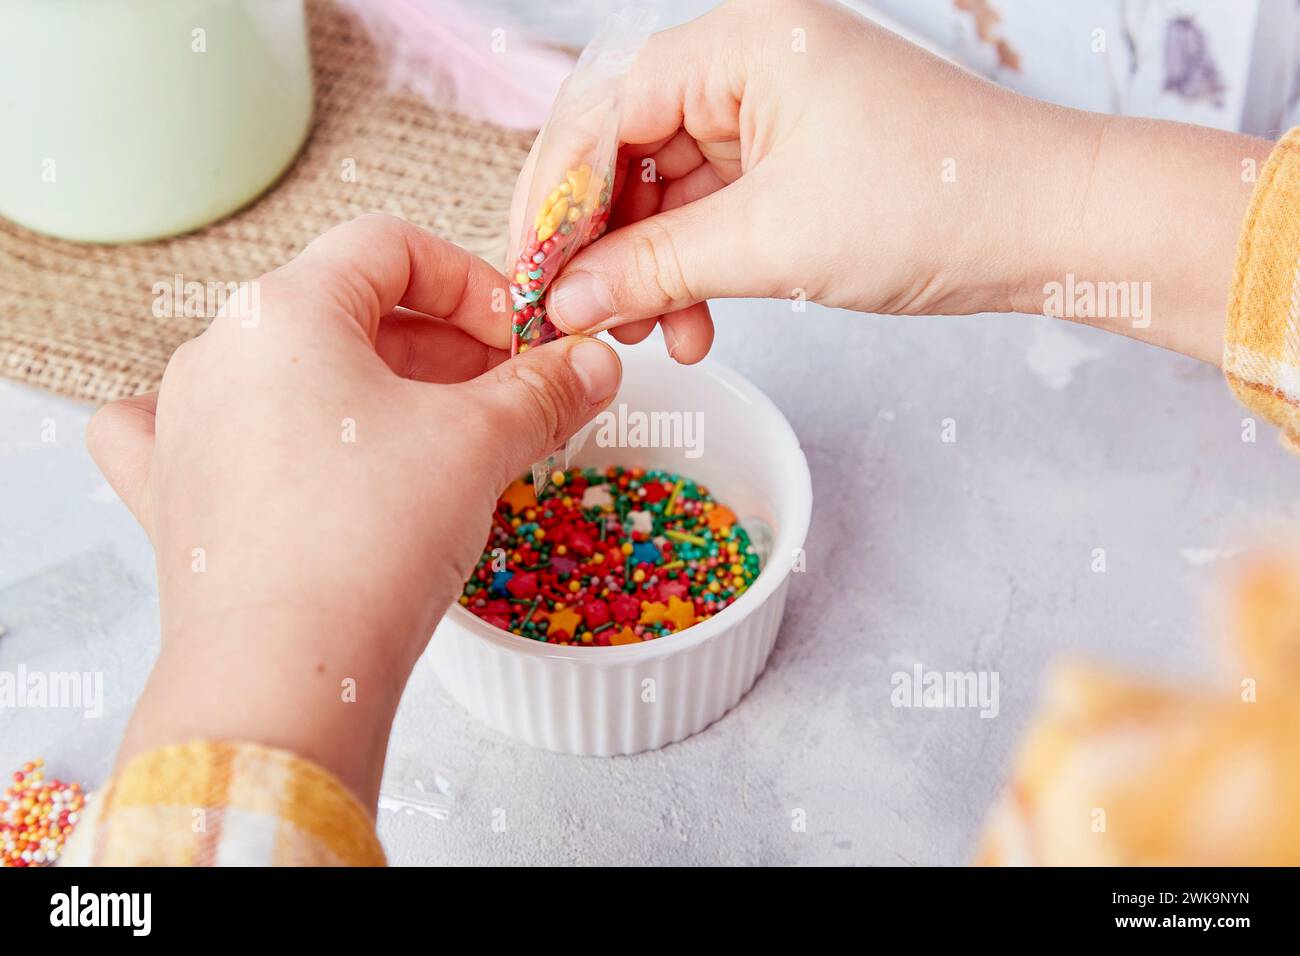 Süße der Ostertraditionen, wenn Kinder Kekse aus nächster Nähe mit Streuseln dekorieren. Stockfoto